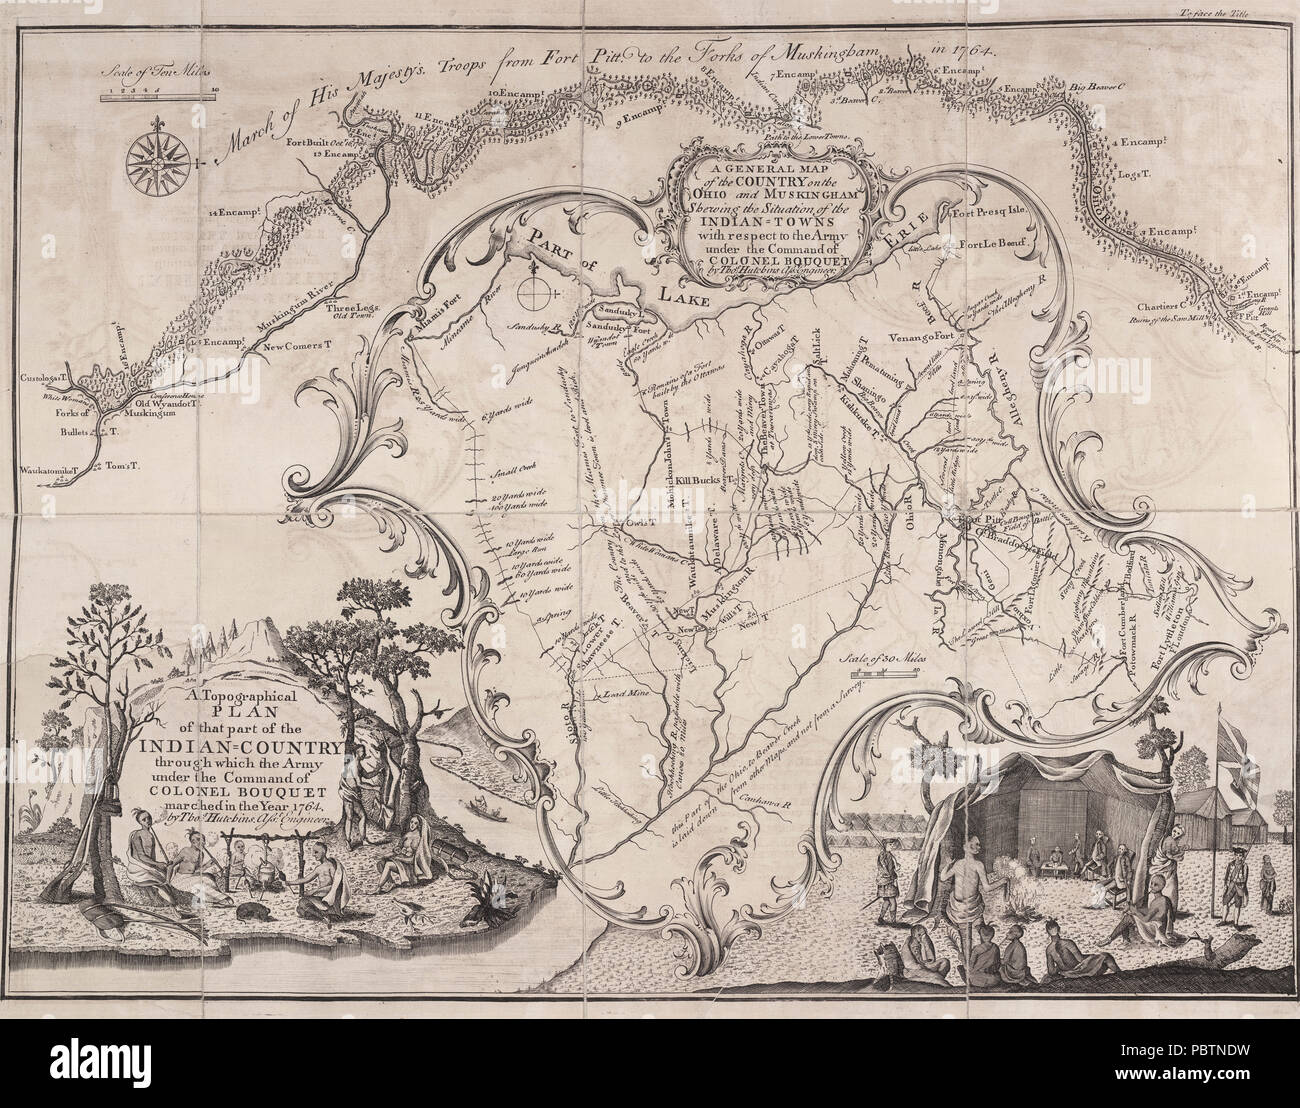 Un Plan topográfico de esa parte del país a través de la cual el Ejército indio bajo el mando del Coronel Bouquet marcharon en el año 1764 por Thomas Hutchins. Ingeniero asistente - Mapa del ejército británico 1764 Foto de stock